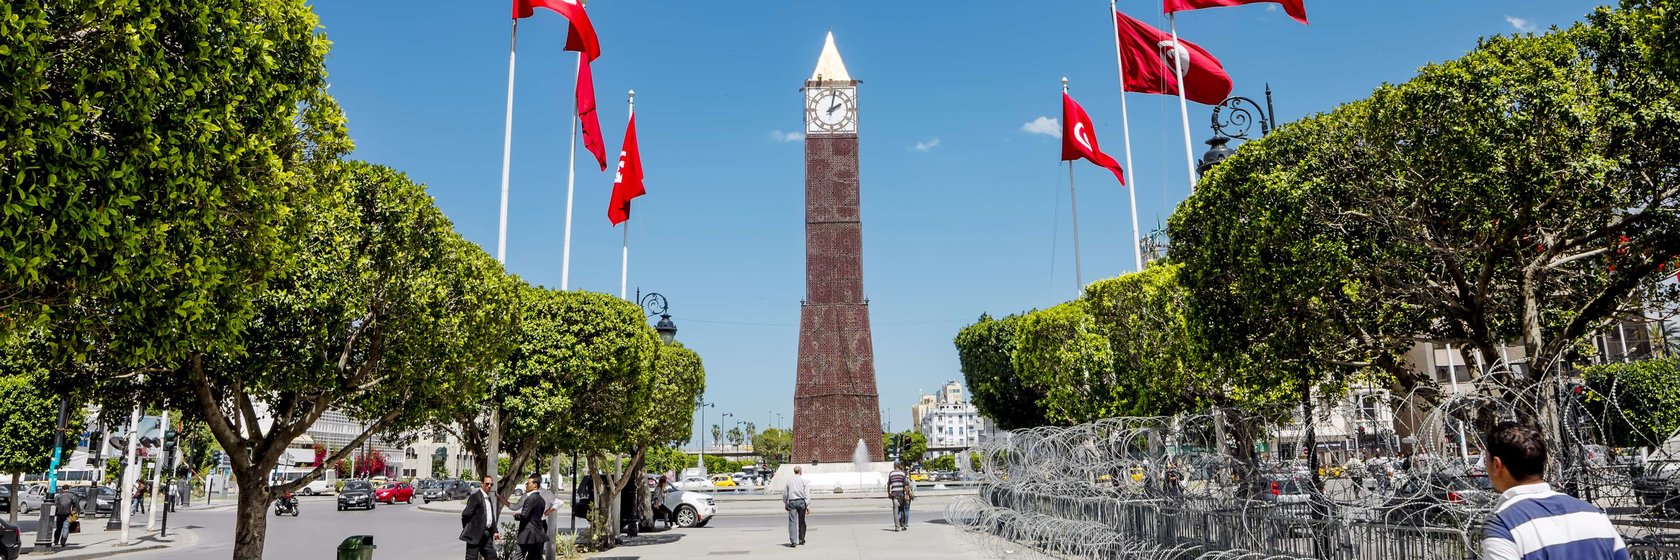 Dovolená Tunis